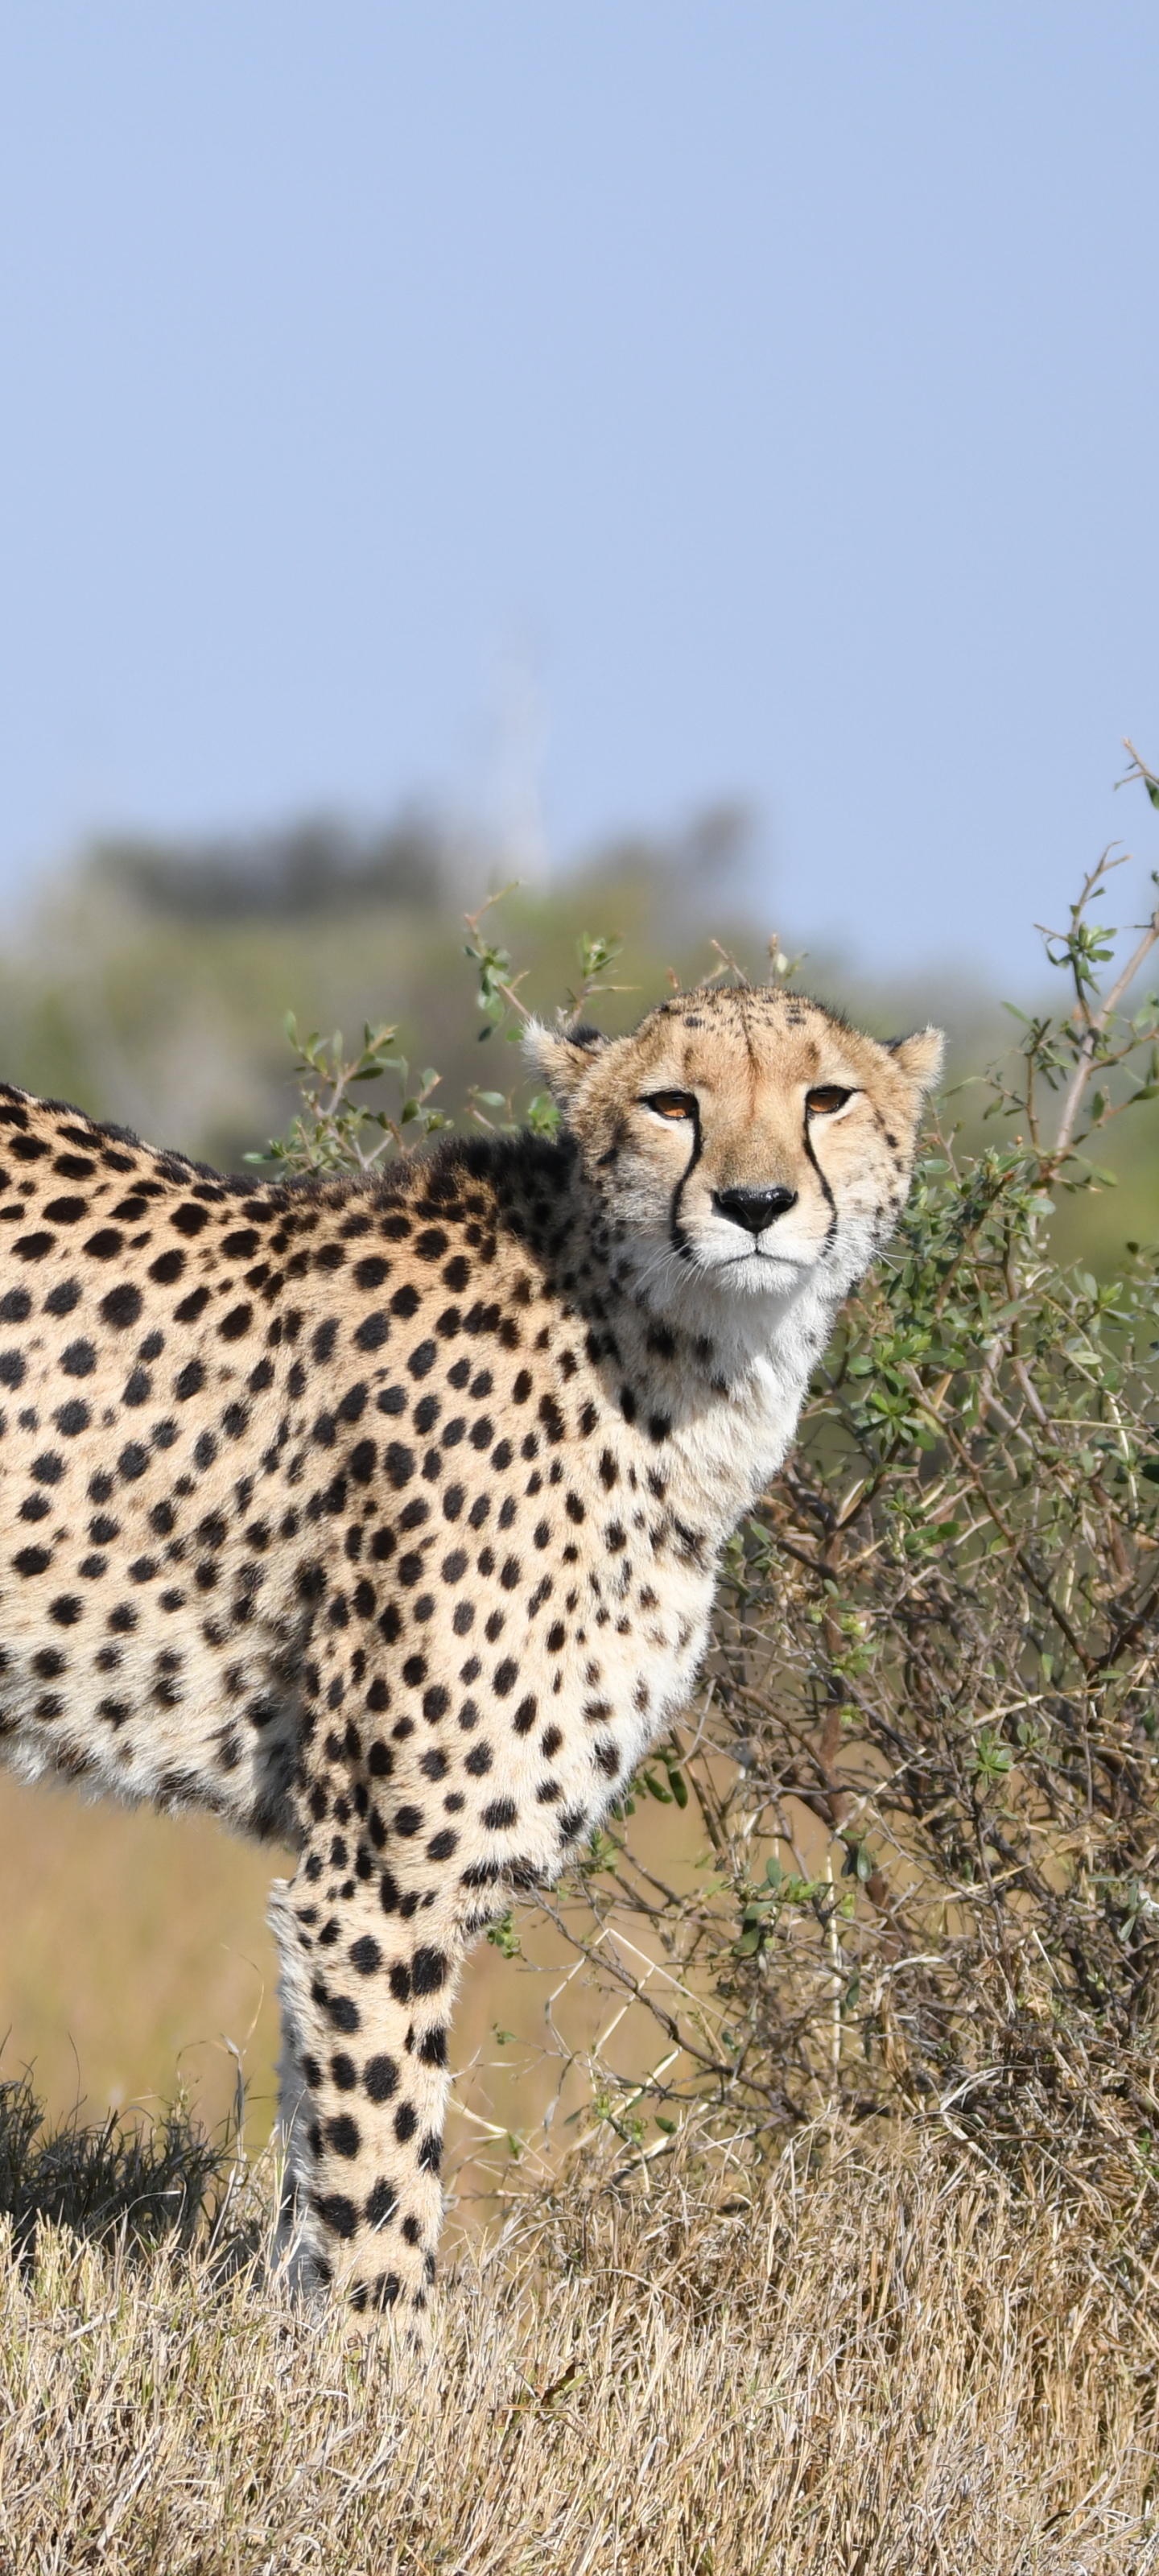 Descarga gratuita de fondo de pantalla para móvil de Animales, Gatos, Guepardo, África, Botsuana.